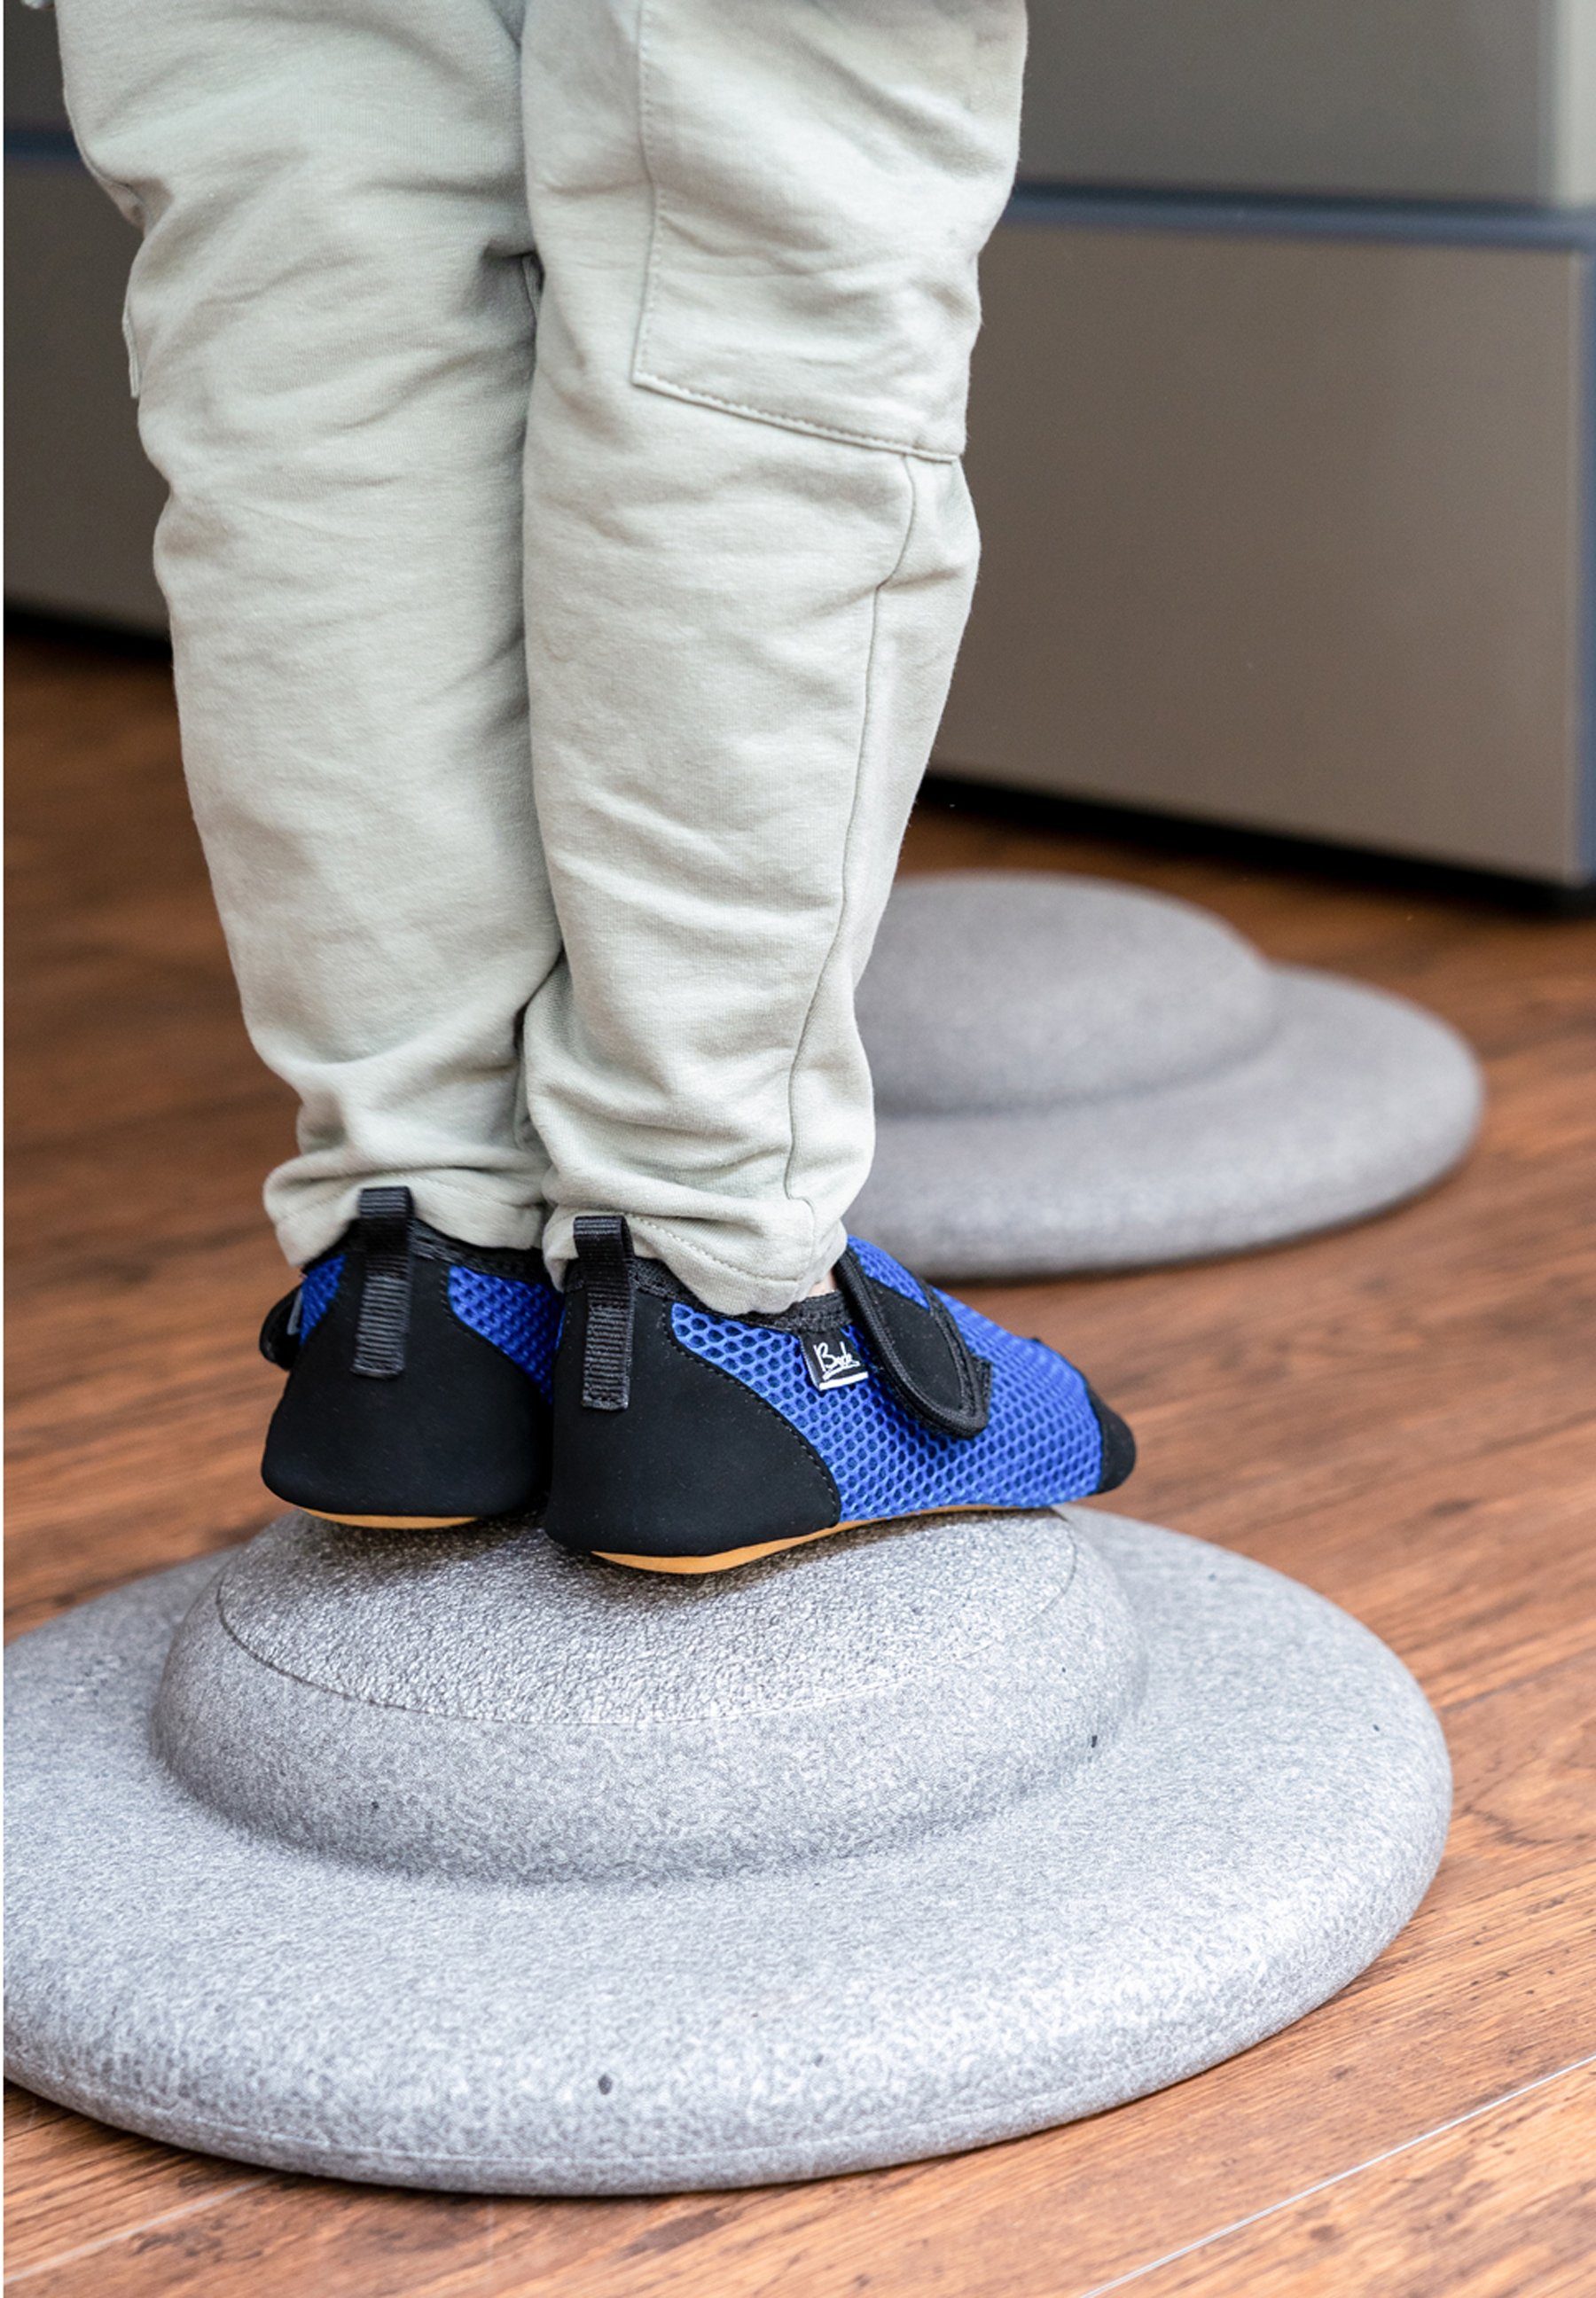 Klettverschluss, Gesunde blau Indoor-Aktiv-Schuh Fußentwicklung Barfußlaufens, atmungsaktiver Sohle des Gefühl mit - Beck BECK-BUDDIES Hausschuh